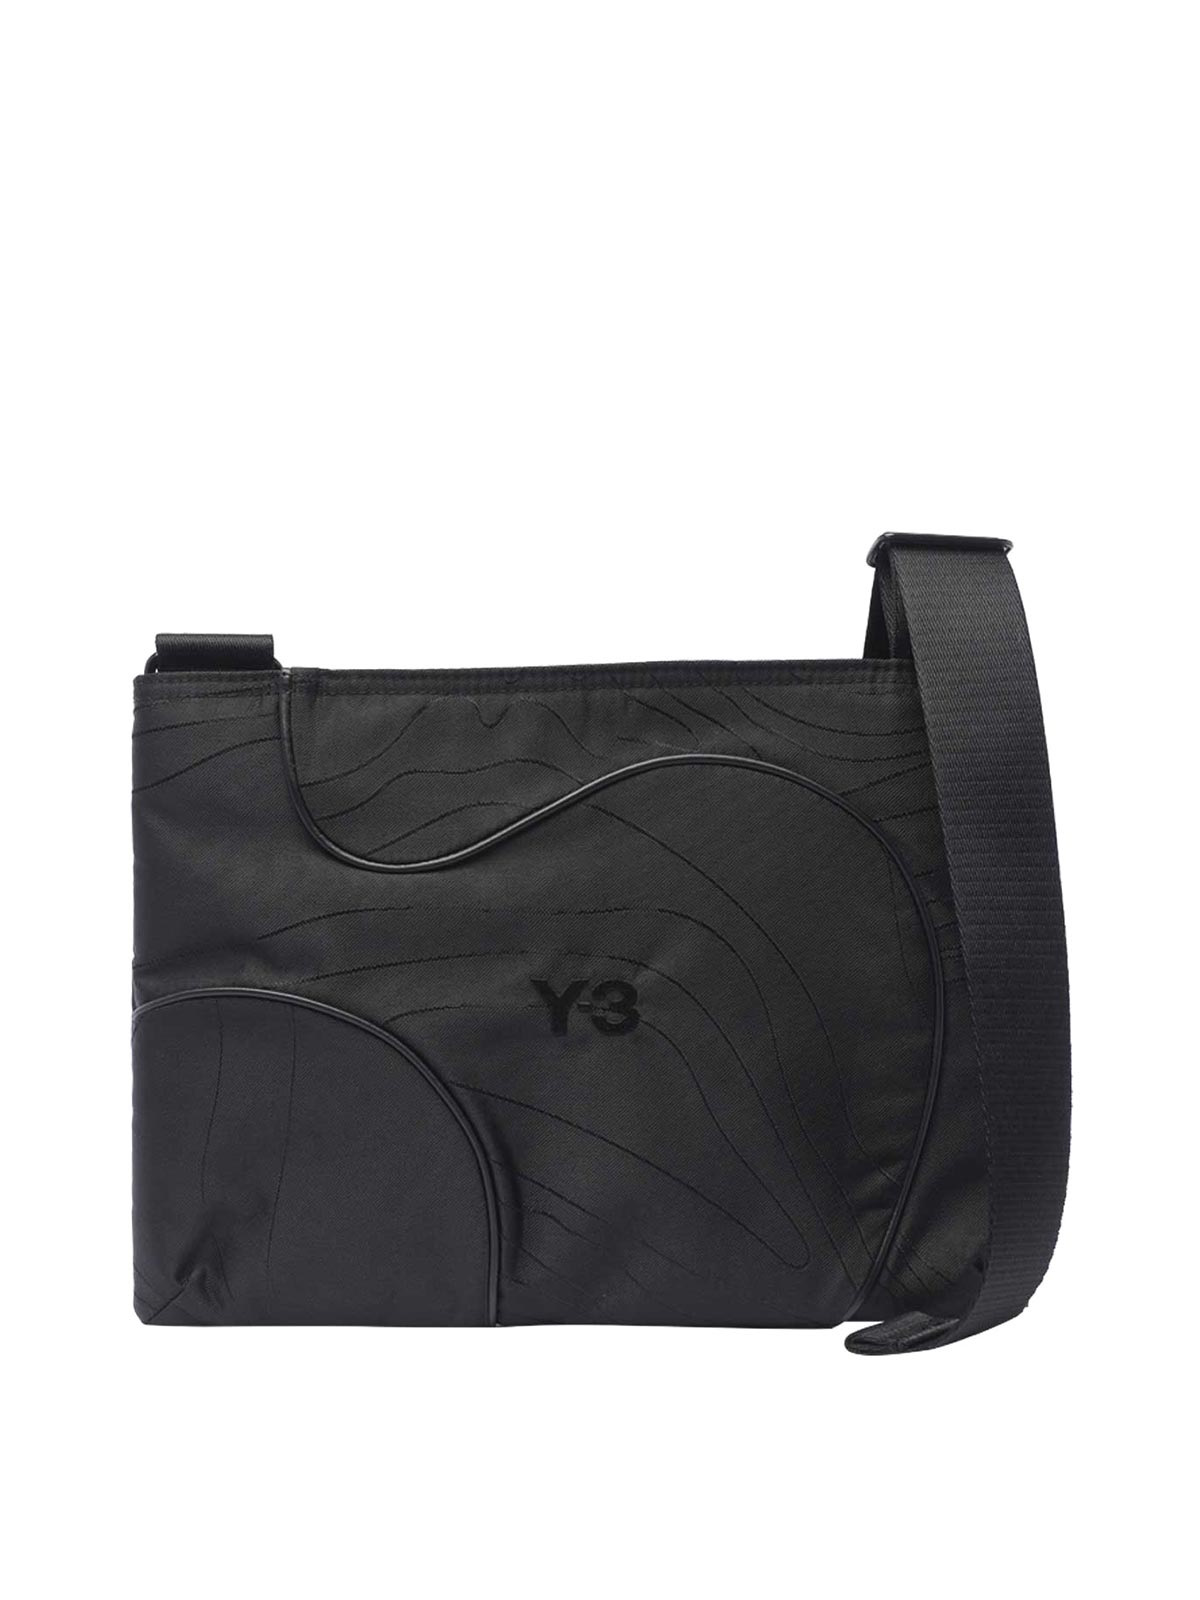 Y-3 Tpo Messenger Bag In Black